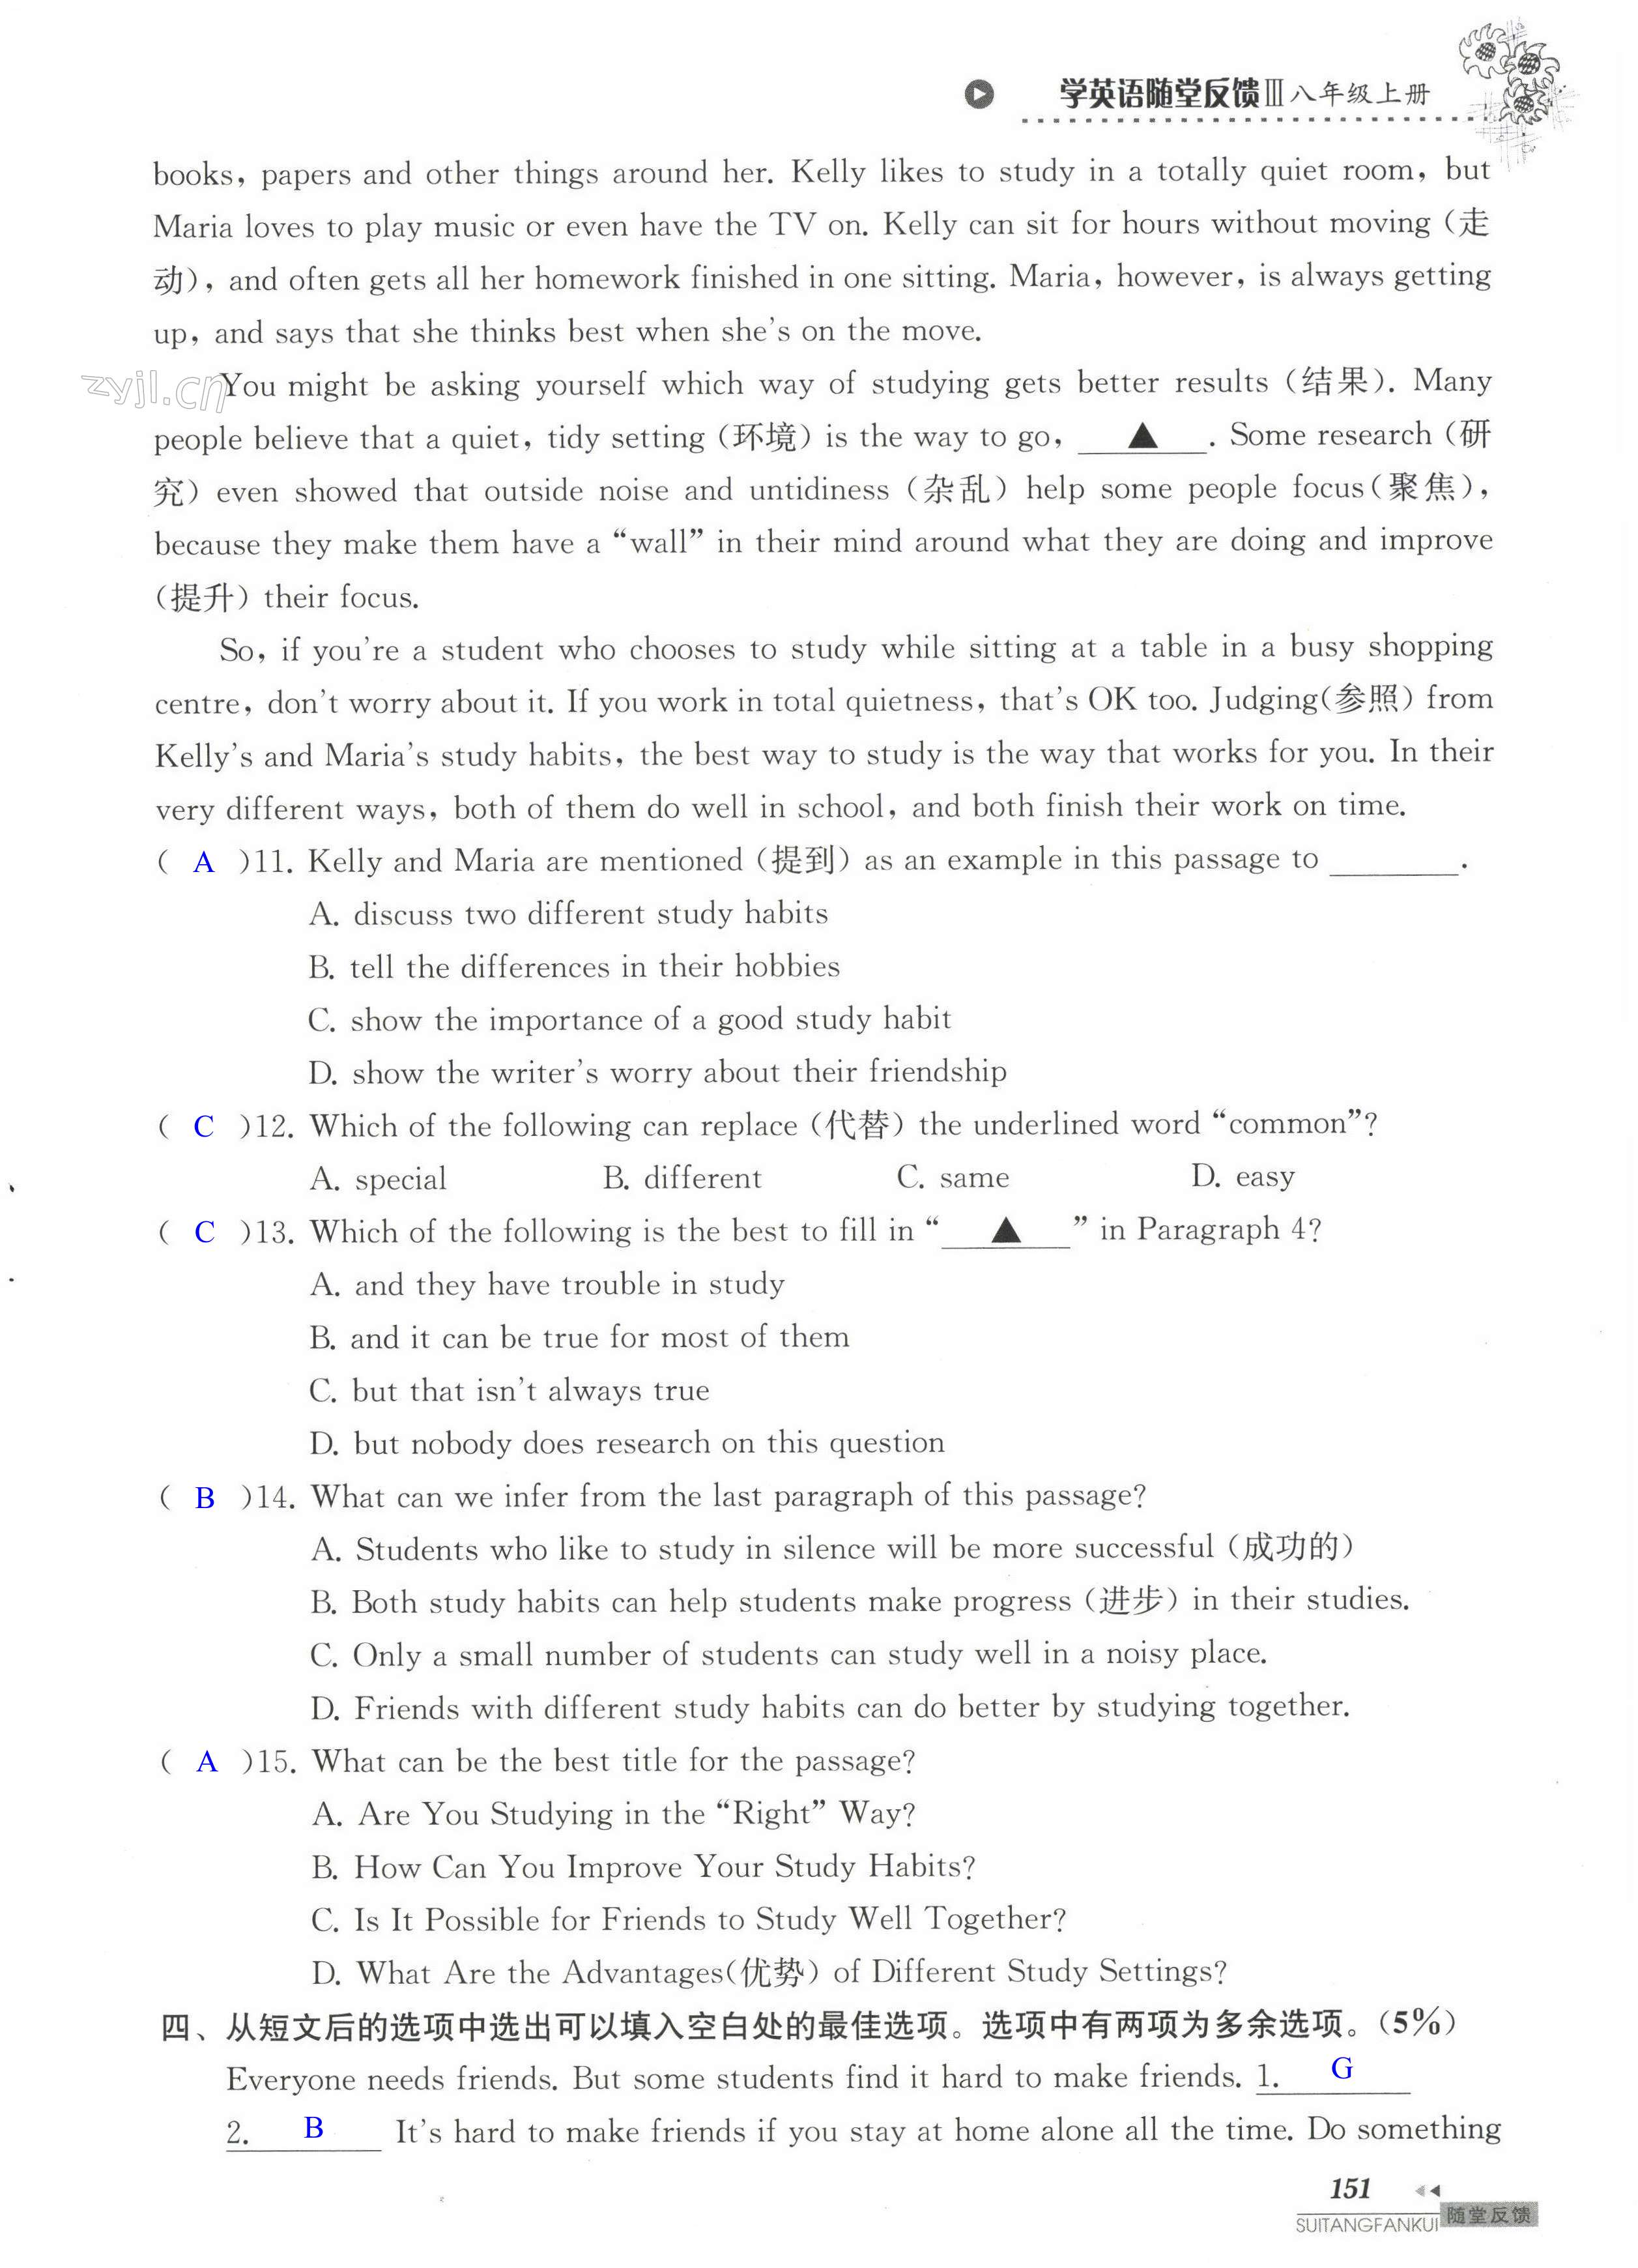 单元综合测试卷 Test for Unit 1 of 8A - 第151页